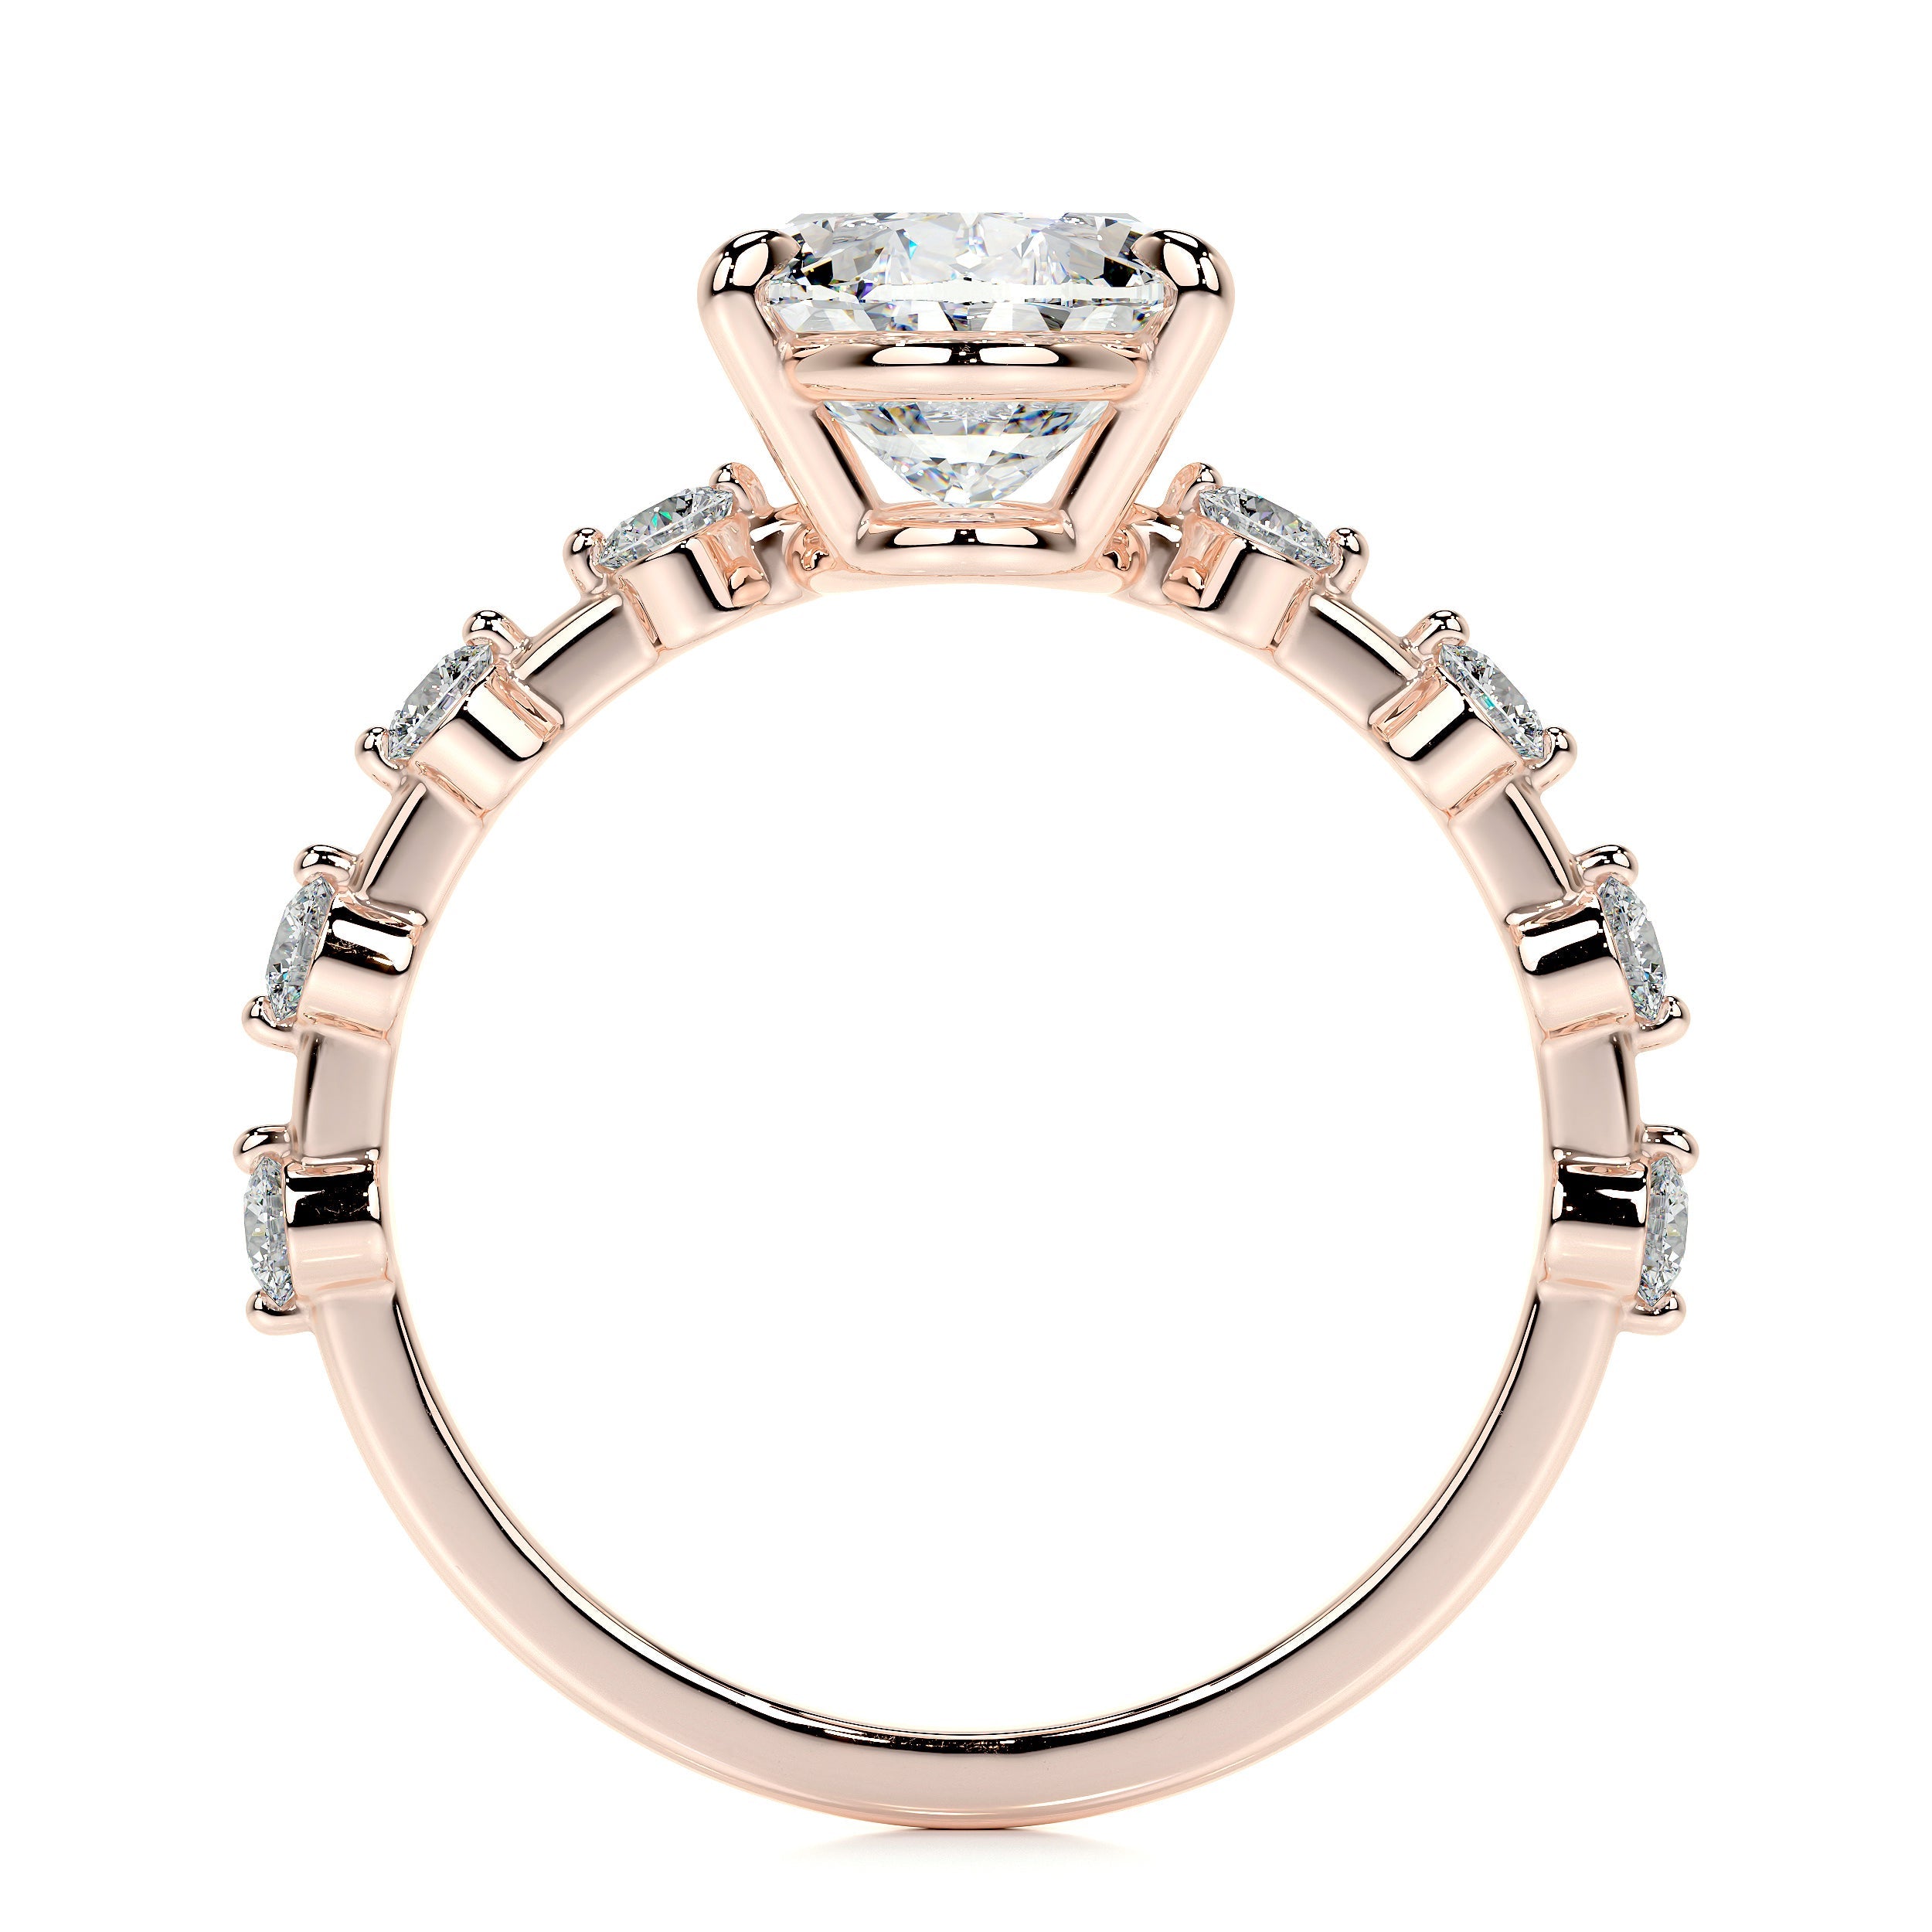 Bell Lab Grown Diamond Ring   (3.40 Carat) -14K Rose Gold